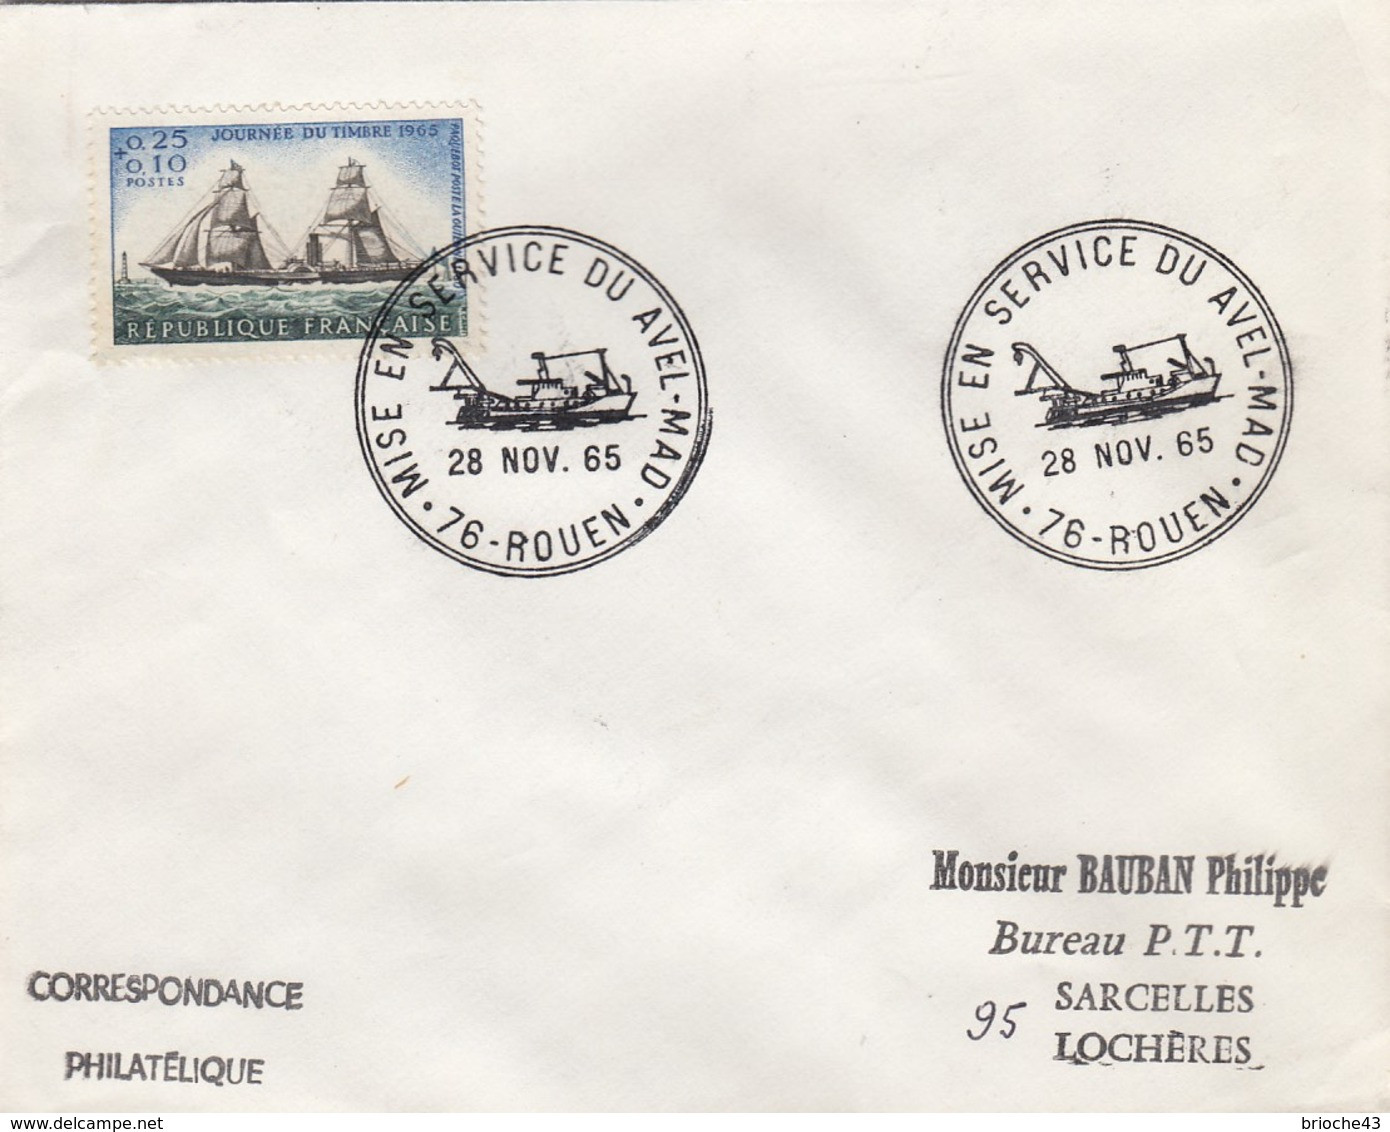 FRANCE - LETTRE JOURNEE TIMBRE 1965   - CACHET ROND MISE EN SERVICE DU AVEL-MAD 28.11.65 ROUEN 76 + VERSO  / 6907 - Lettres & Documents